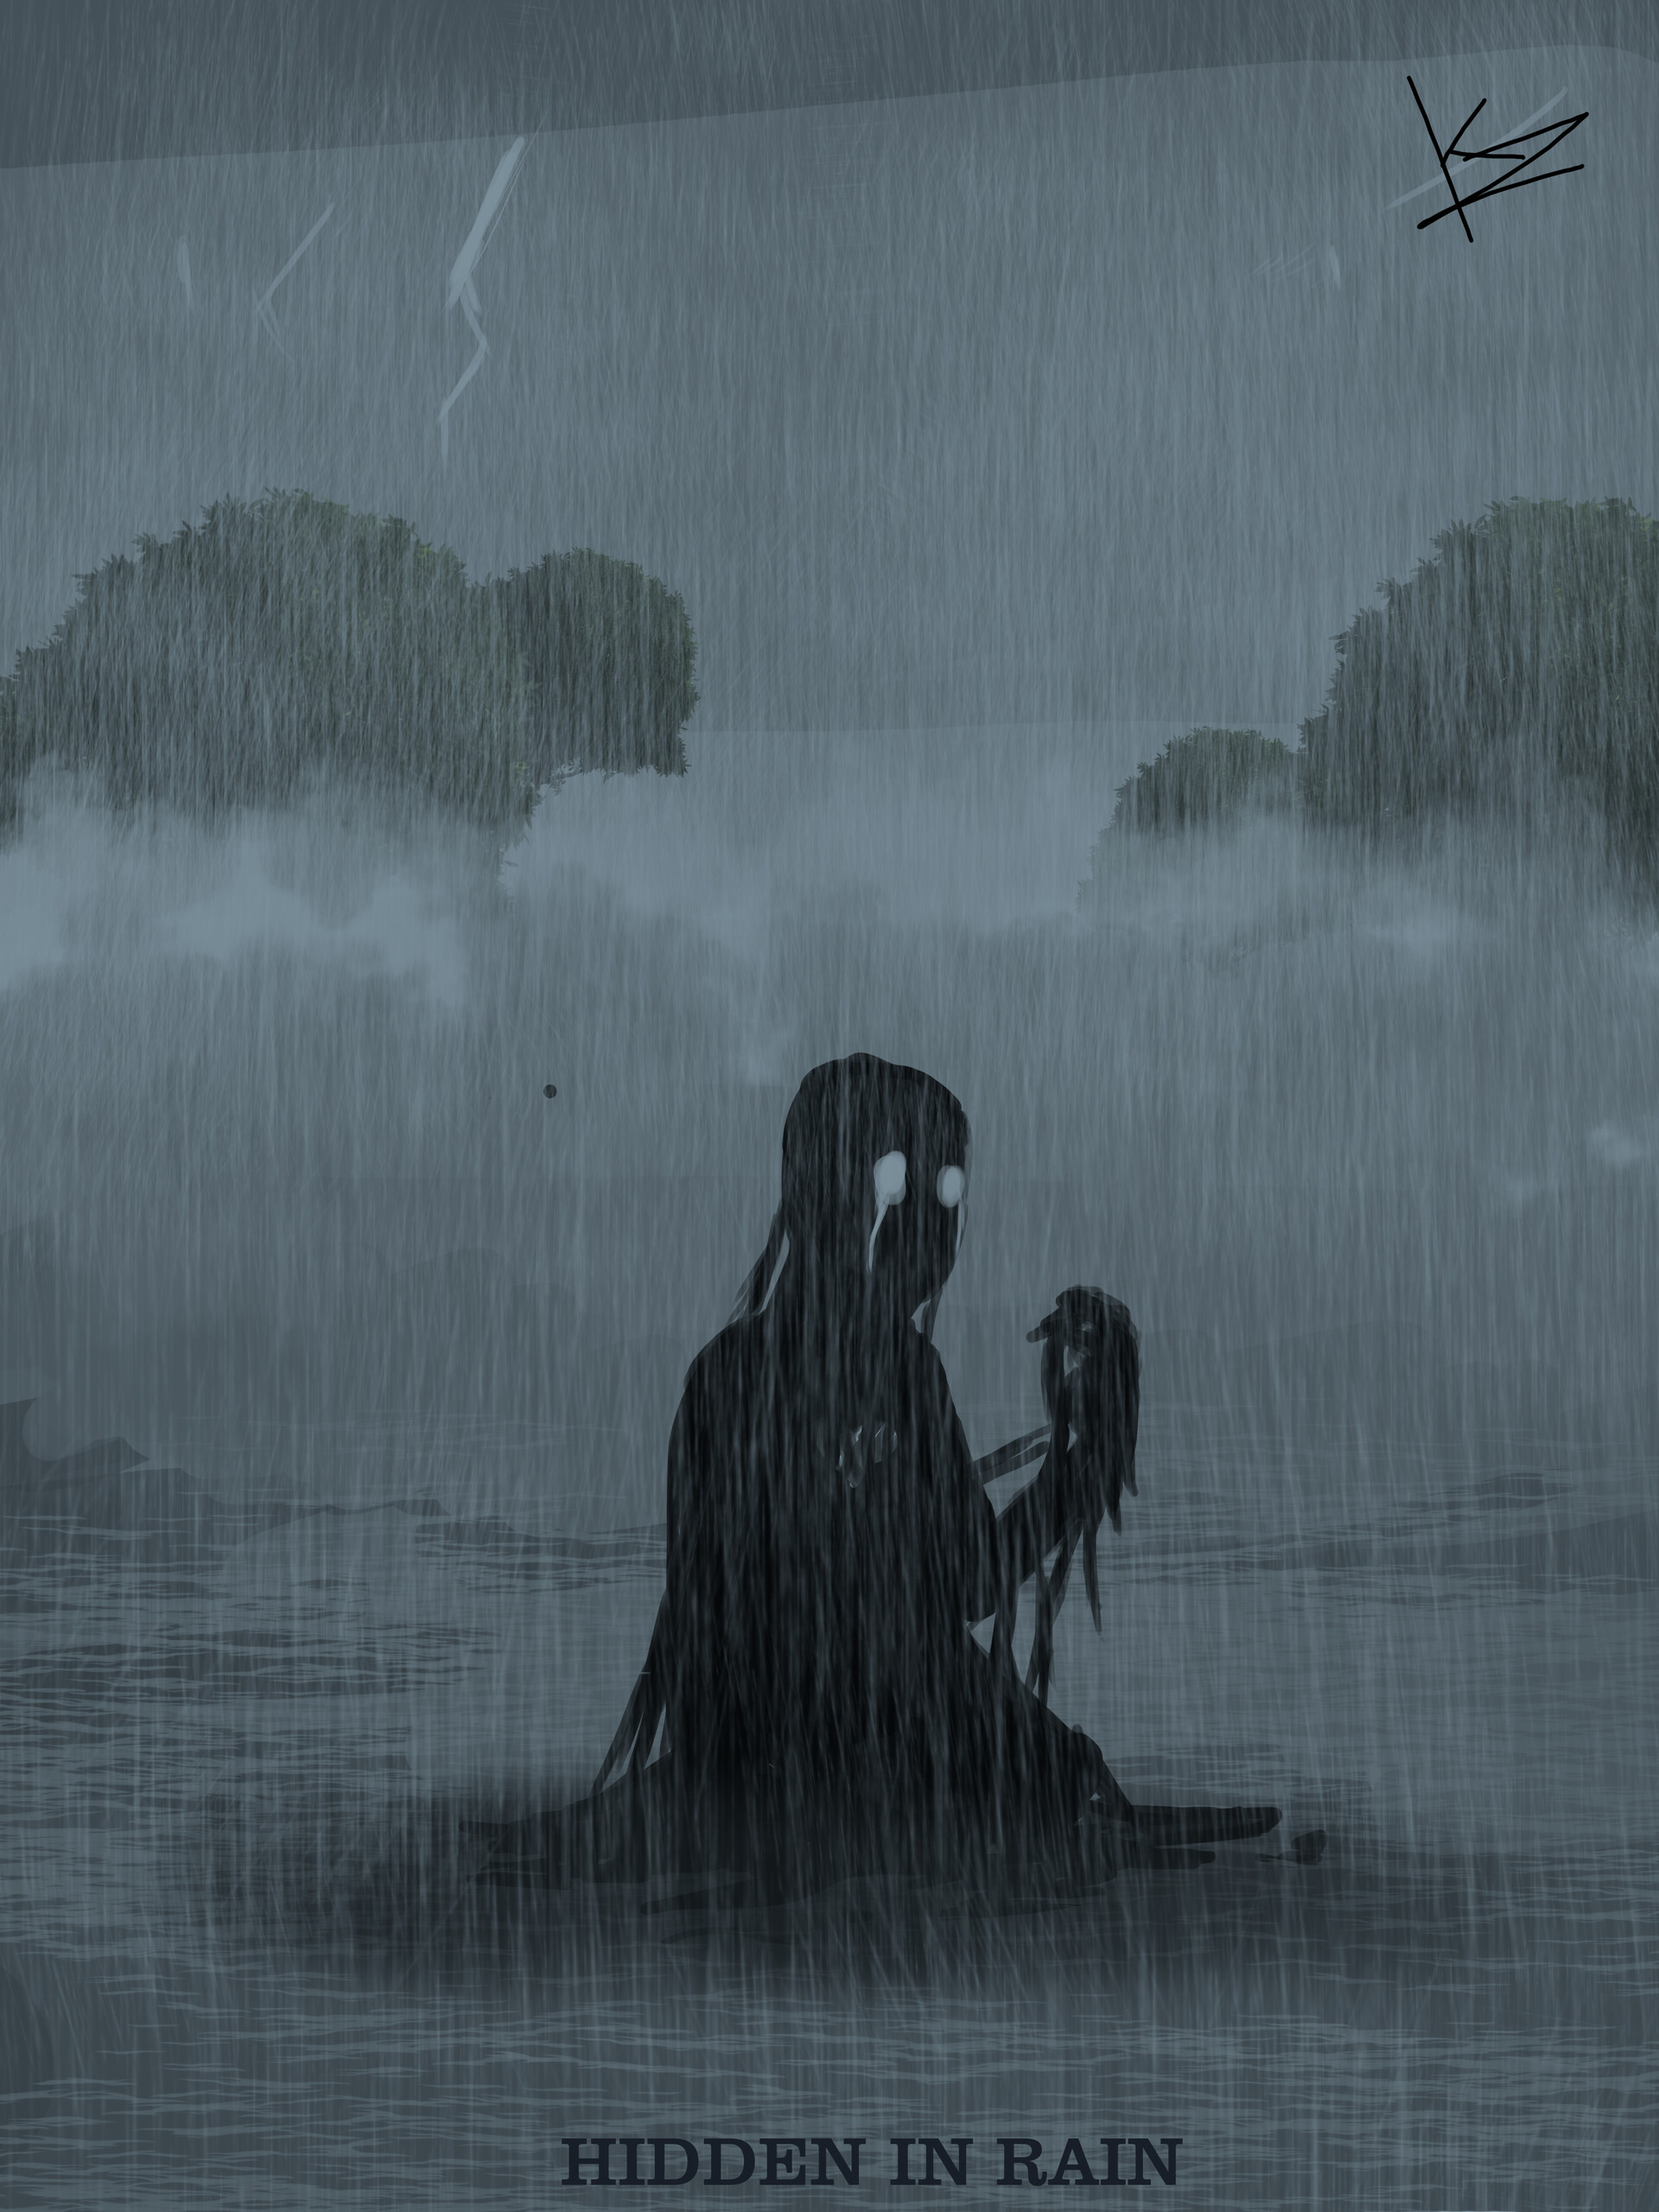 Alone in the rain